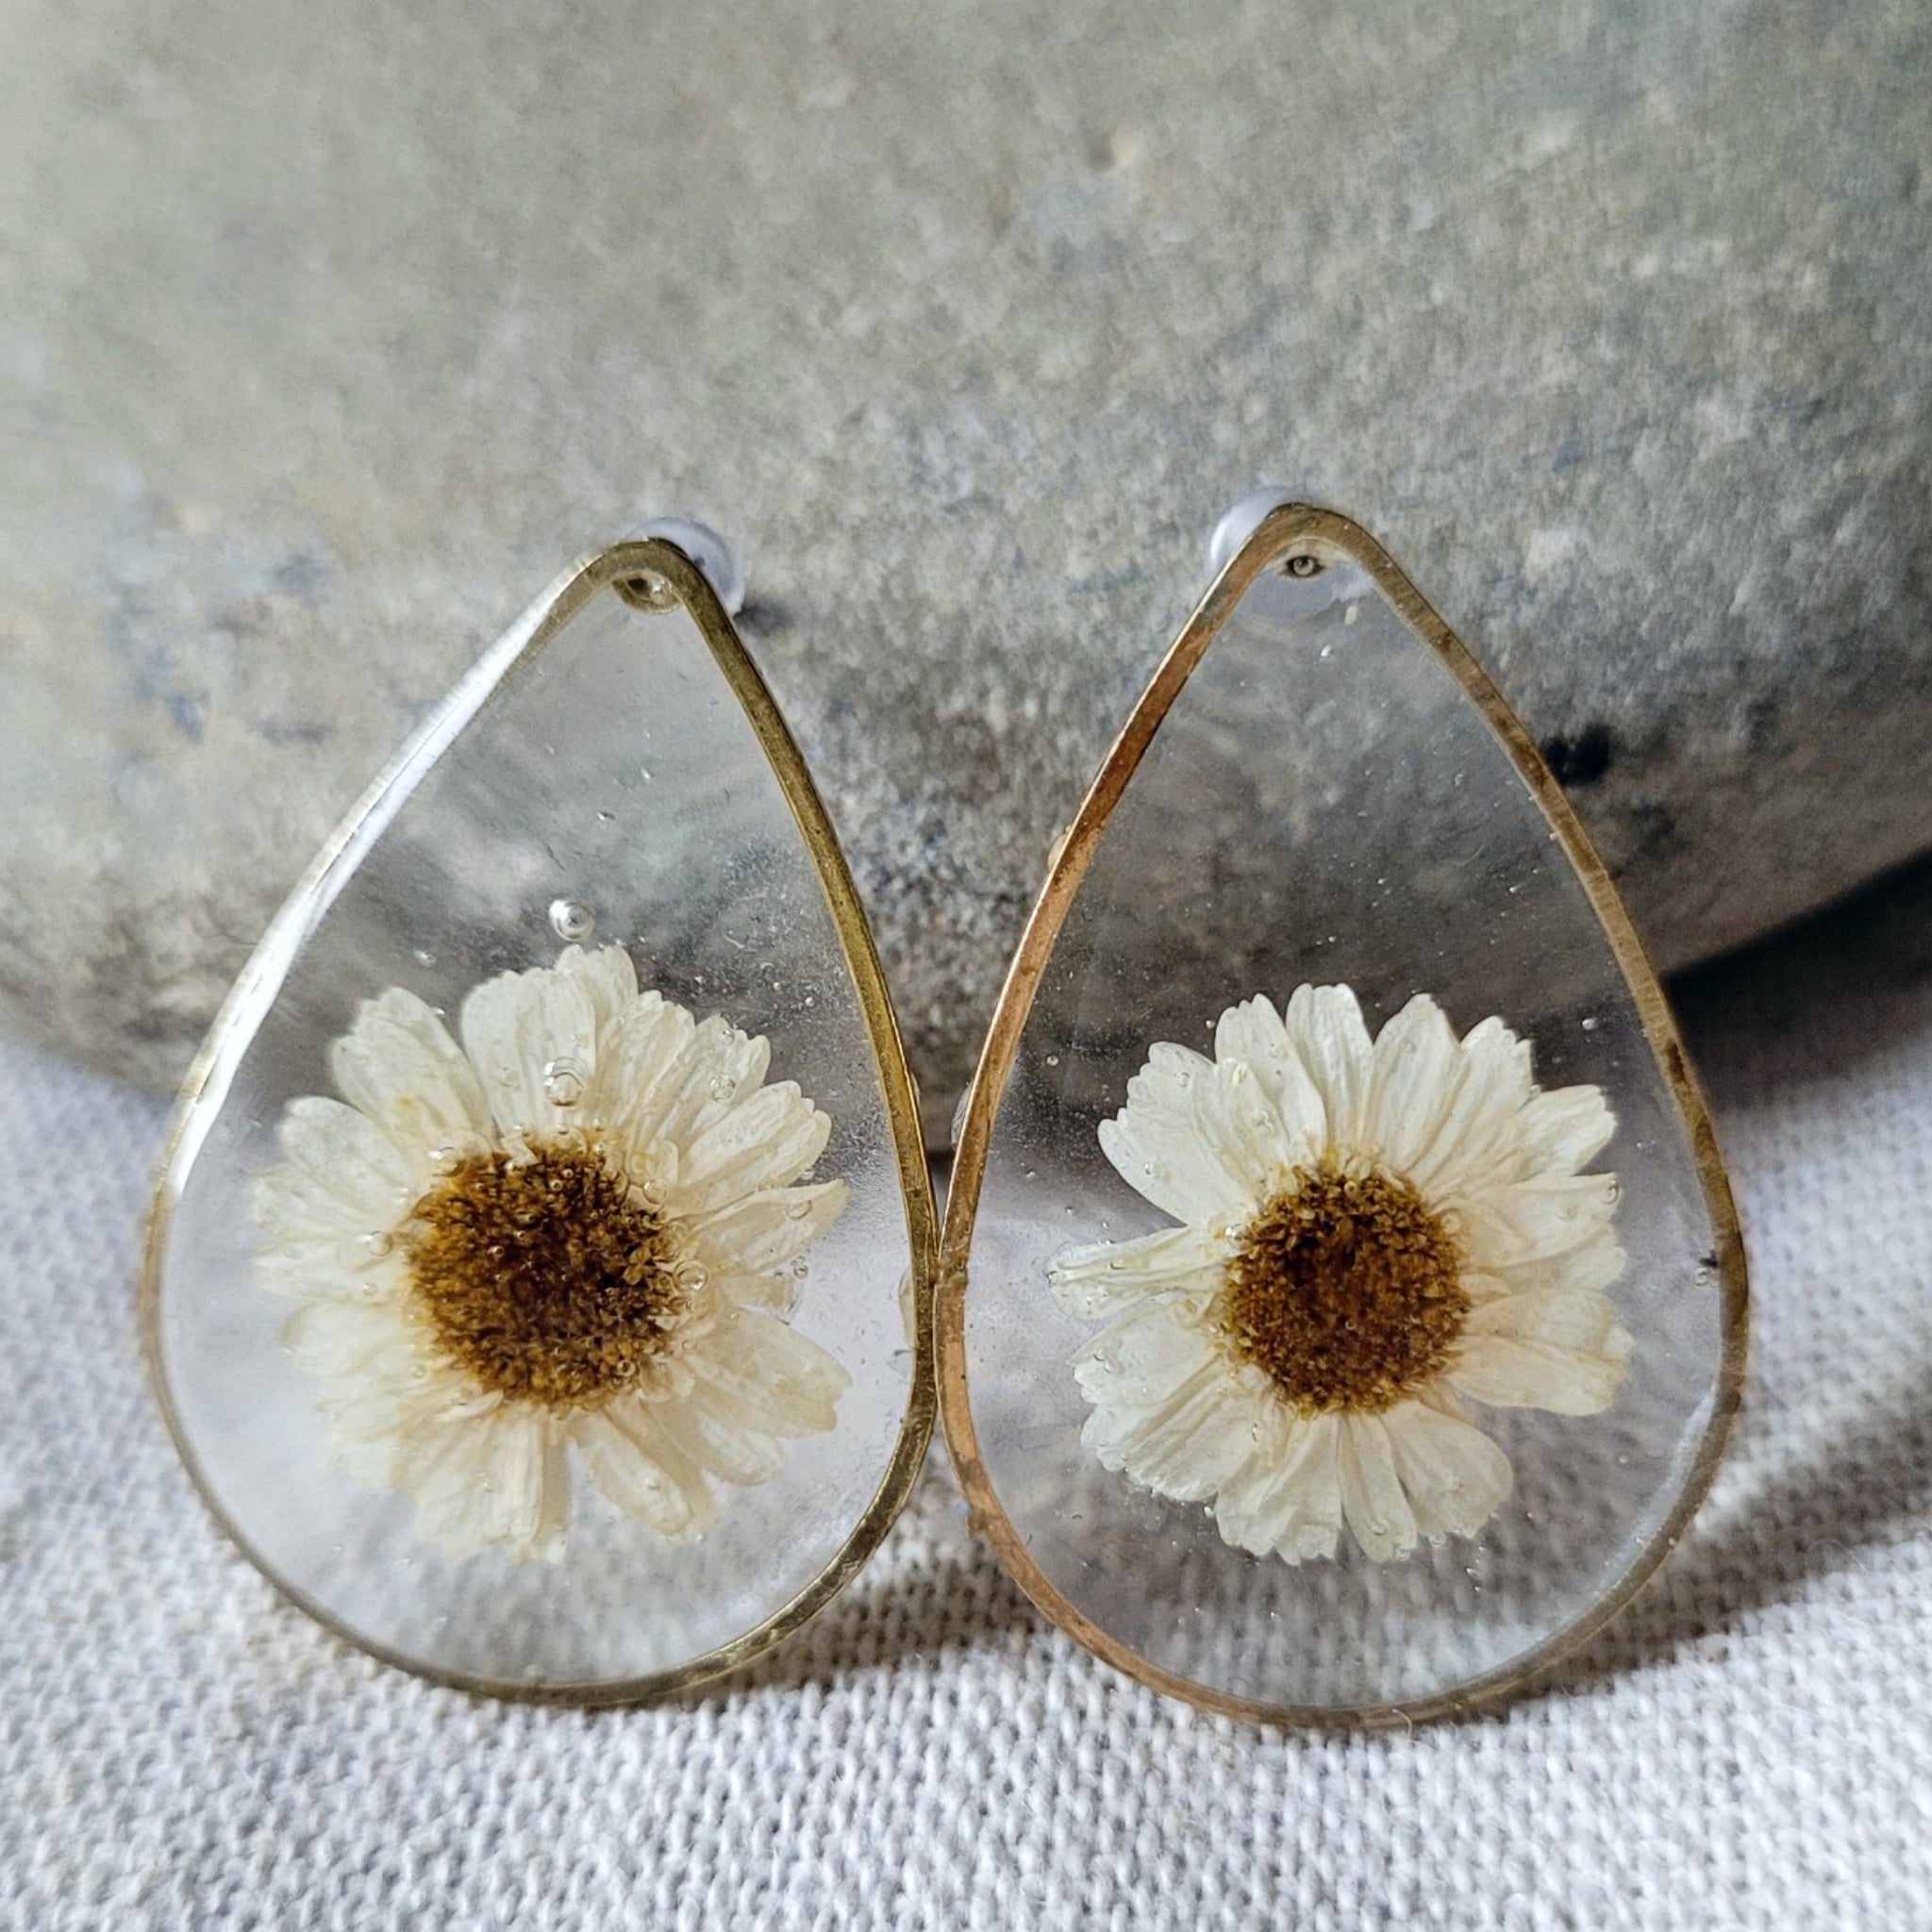 Pressed Flower Brass Stud Earrings